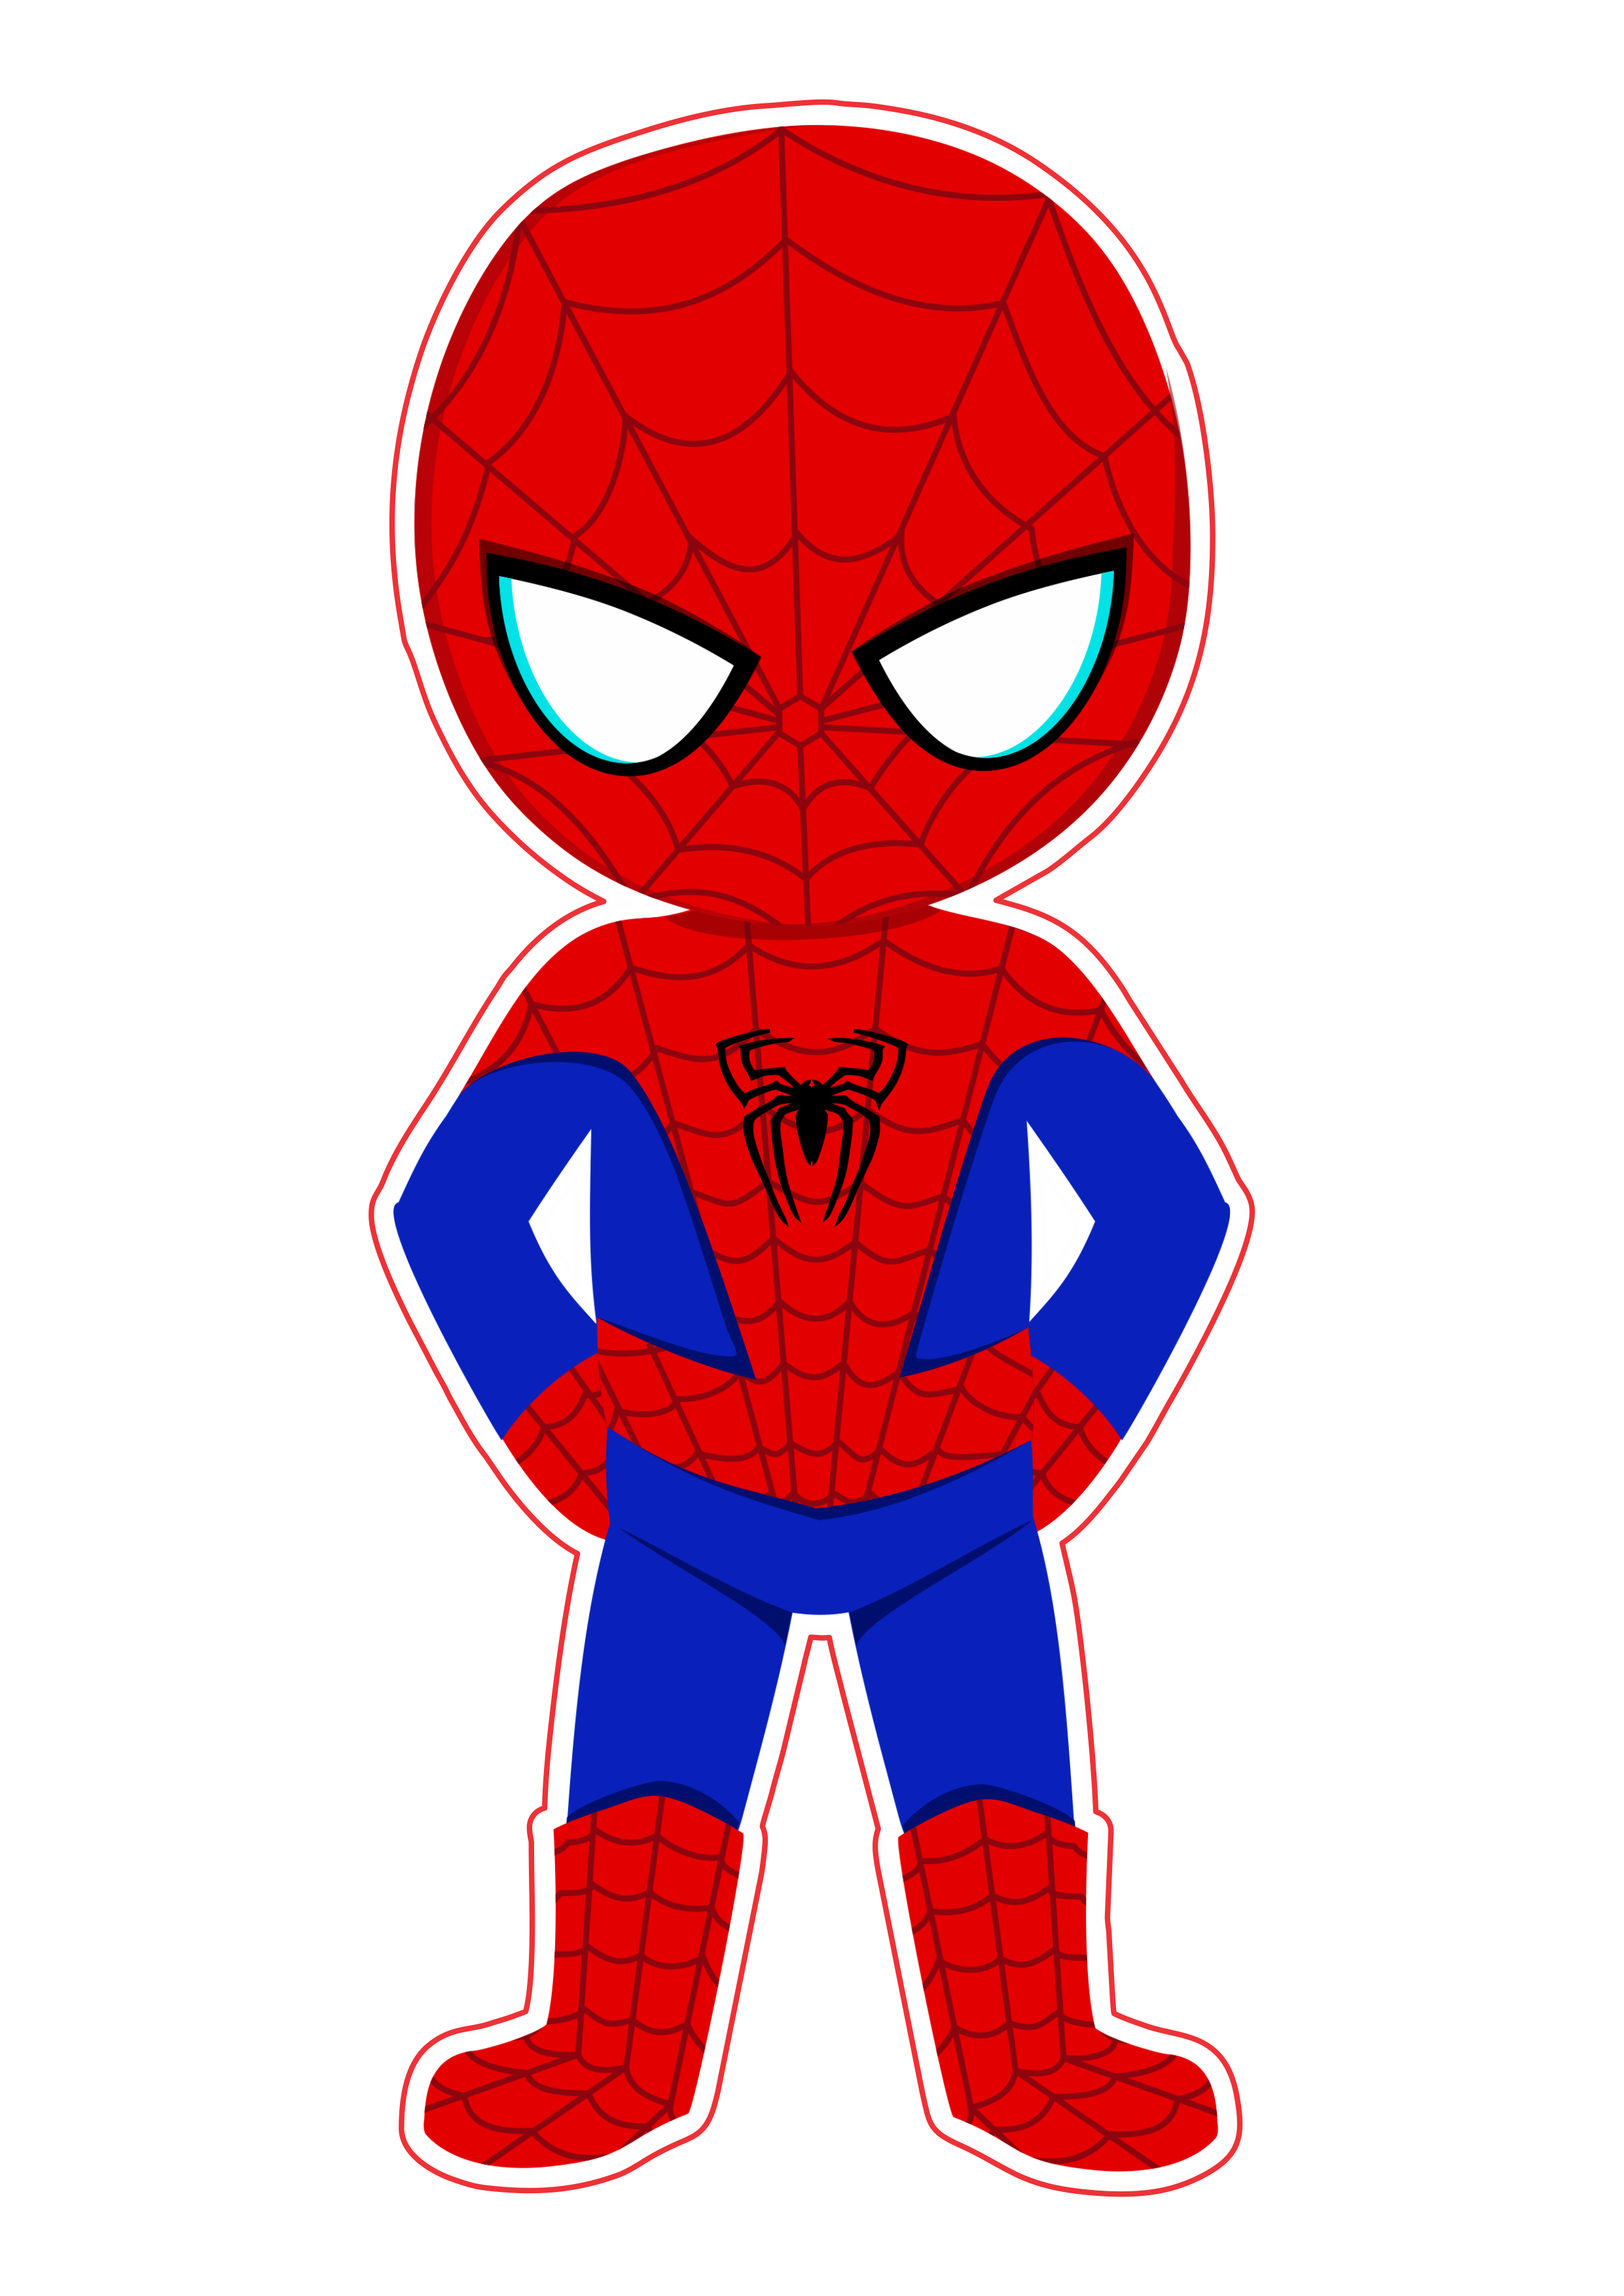 Spider-man cute imagem fundo transparente Marvel super heróis arte conceitual png